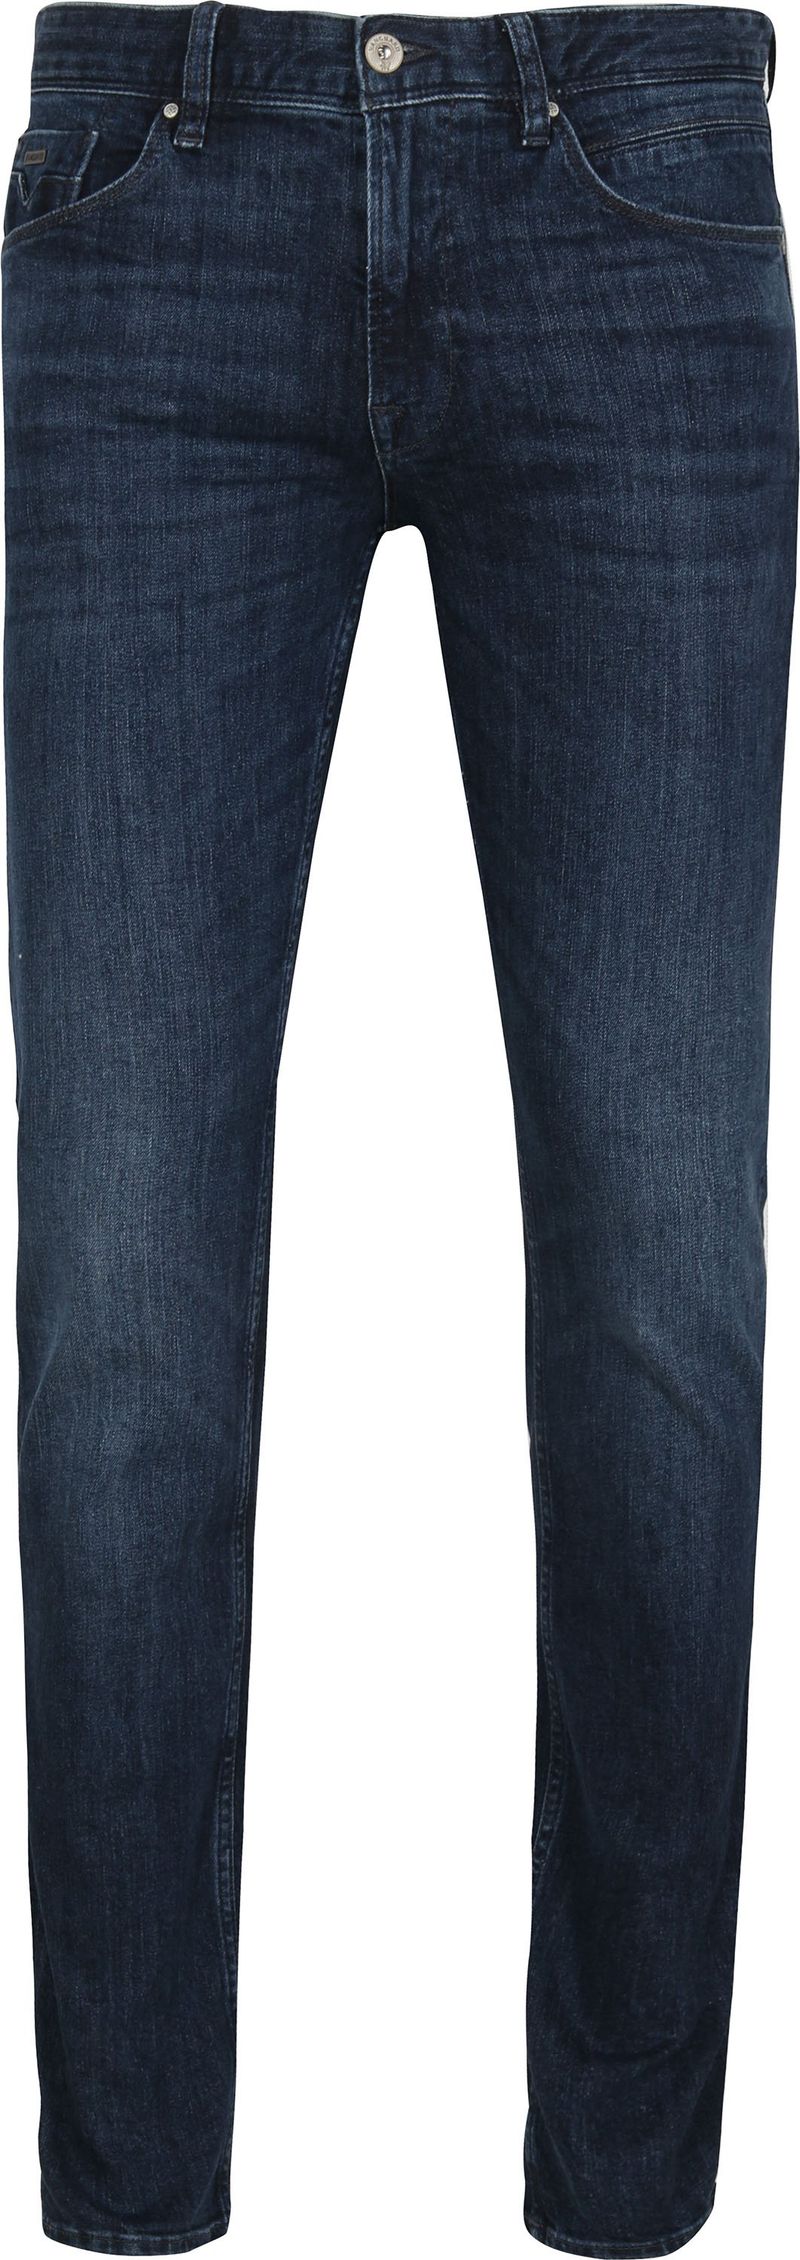 Vanguard Jeans V7 Rider Steel Washed Blau - Größe W 32 - L 34 günstig online kaufen